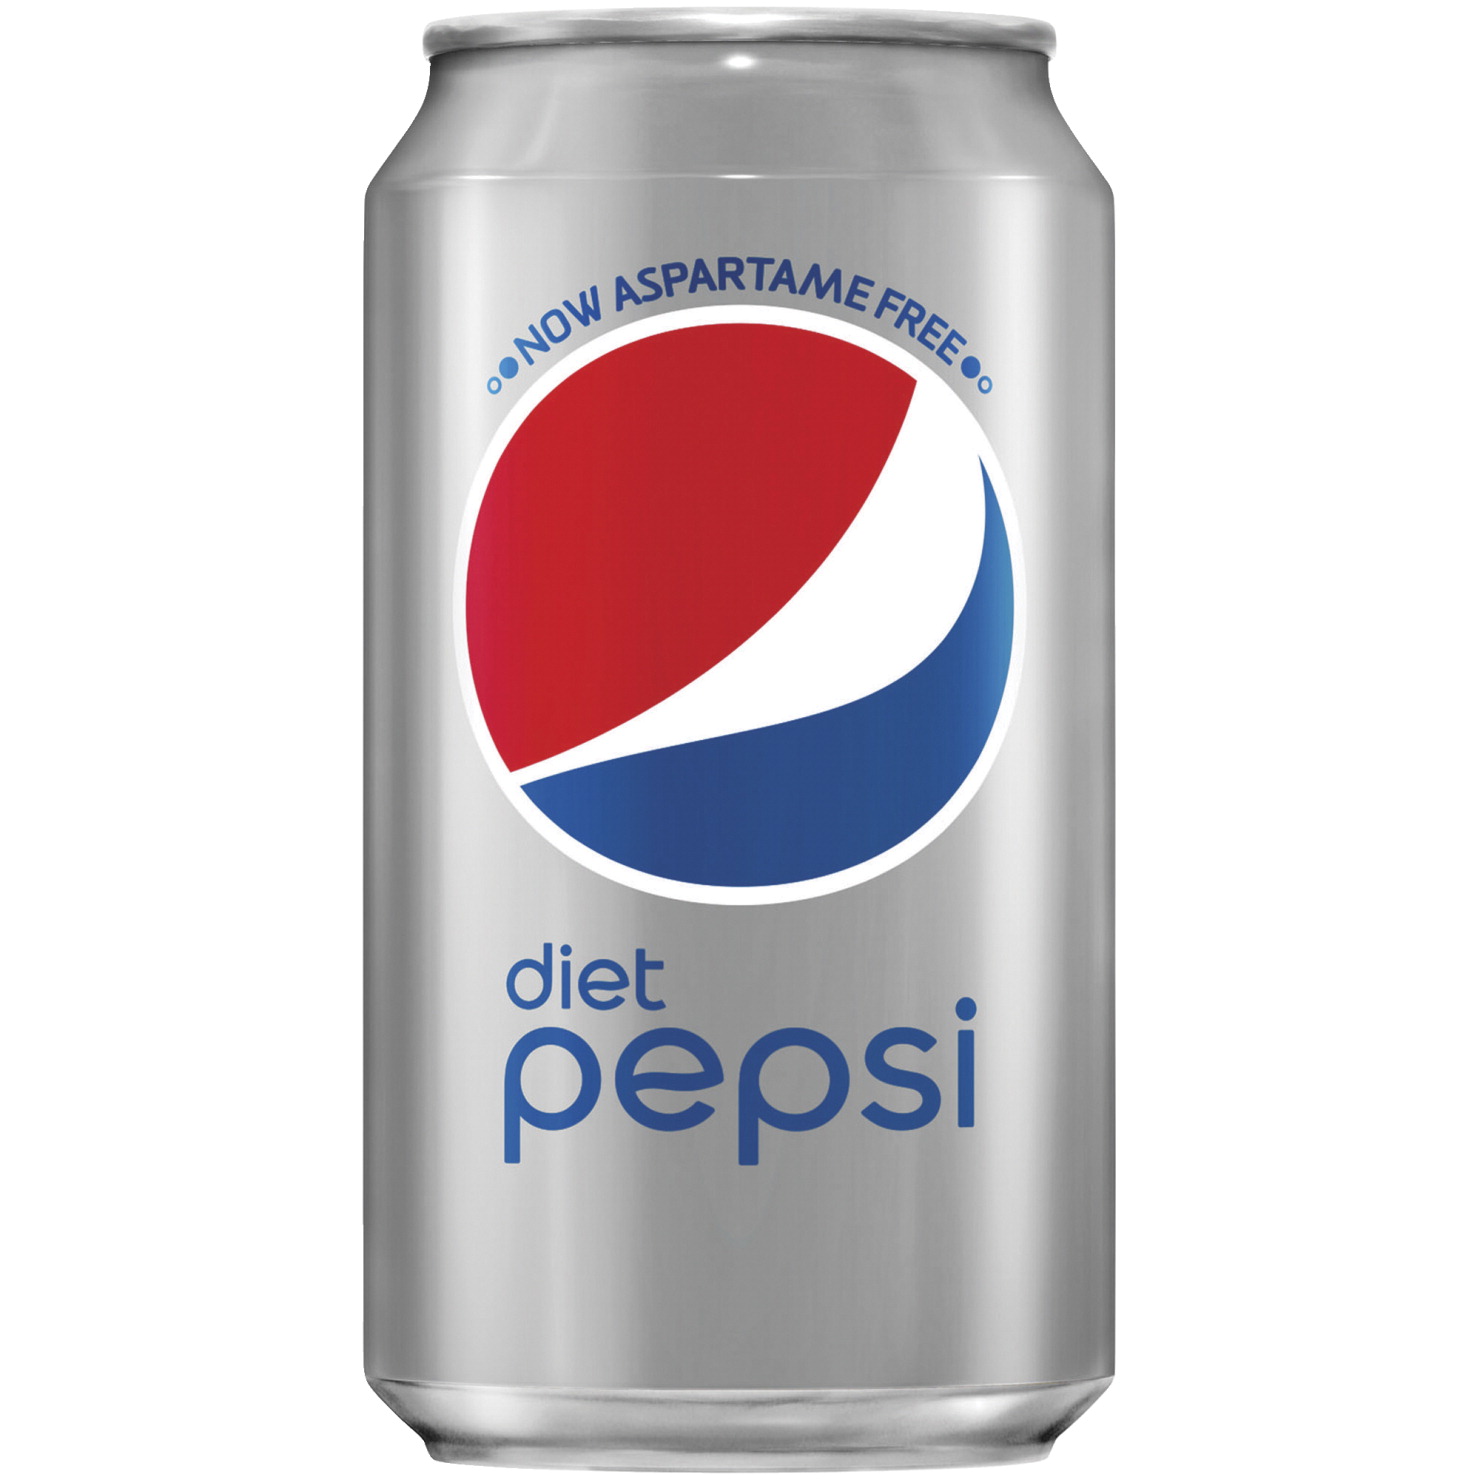 Pepsico Diet Pepsi Cola Canned Soda, 12 oz Can, 24 Per Carton - SOAR ...